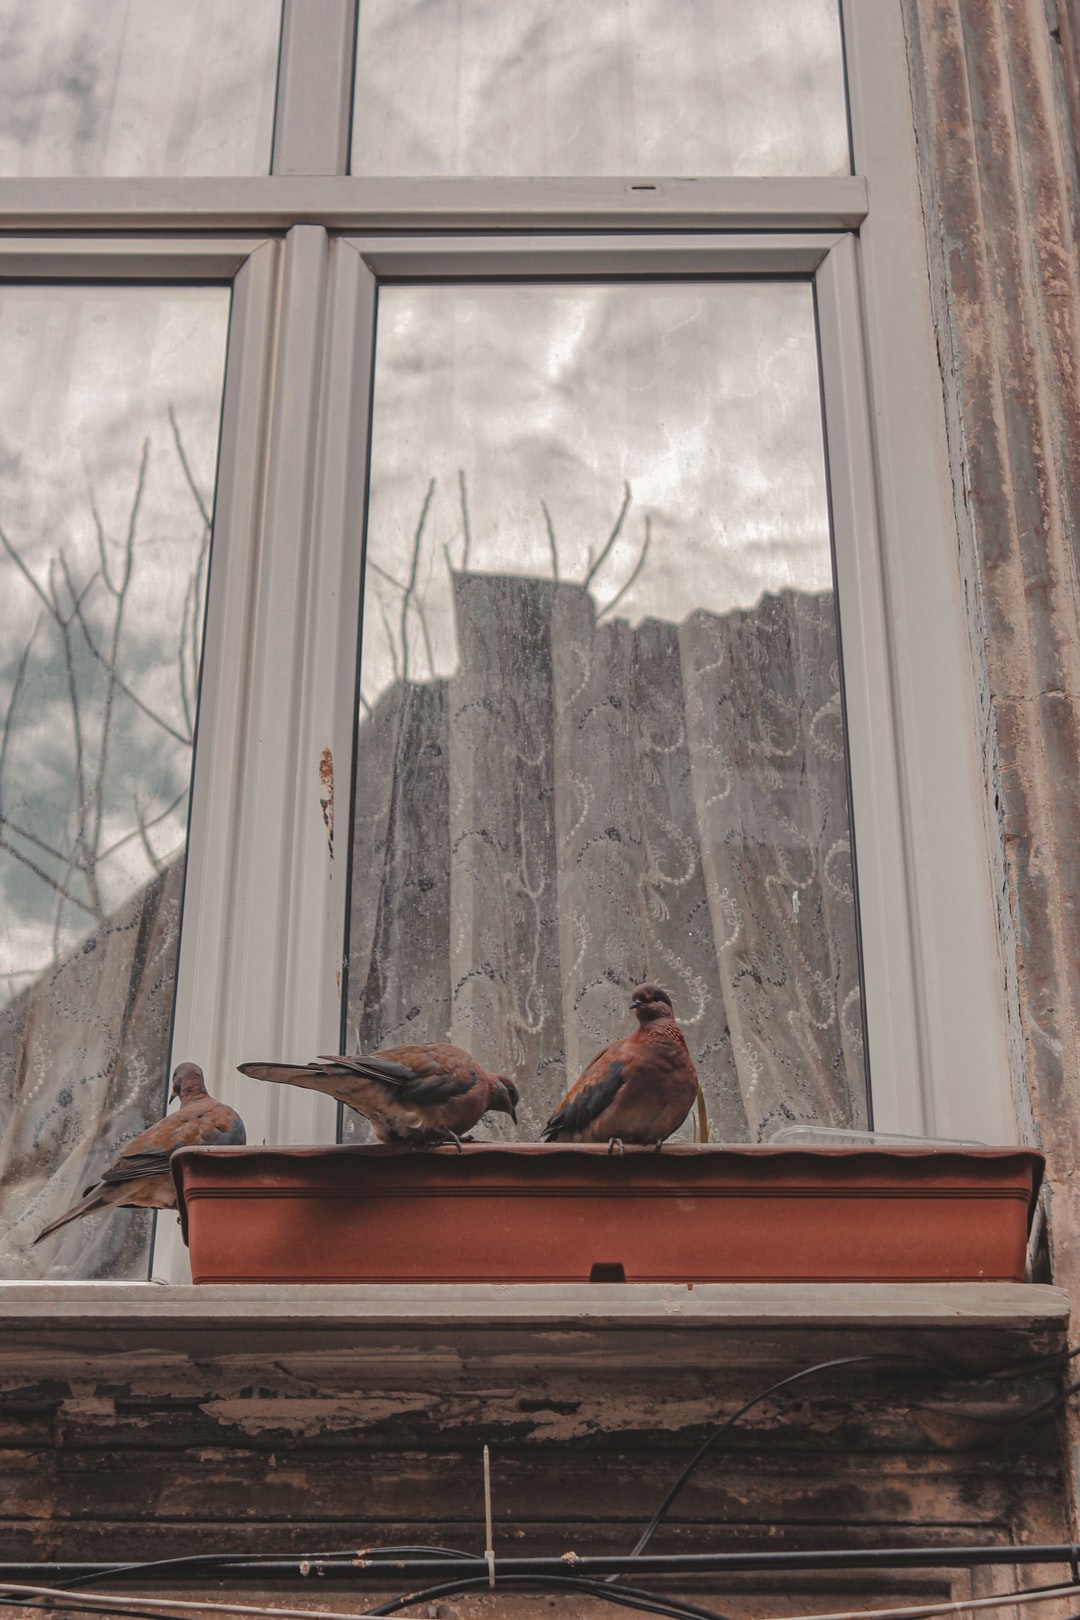 Птица стукнулась в окно примета. Птица ударилась в окно. Птица врезалась в окно. Птица врезалась в окно примета. Птица врезалась в стеклопакет.